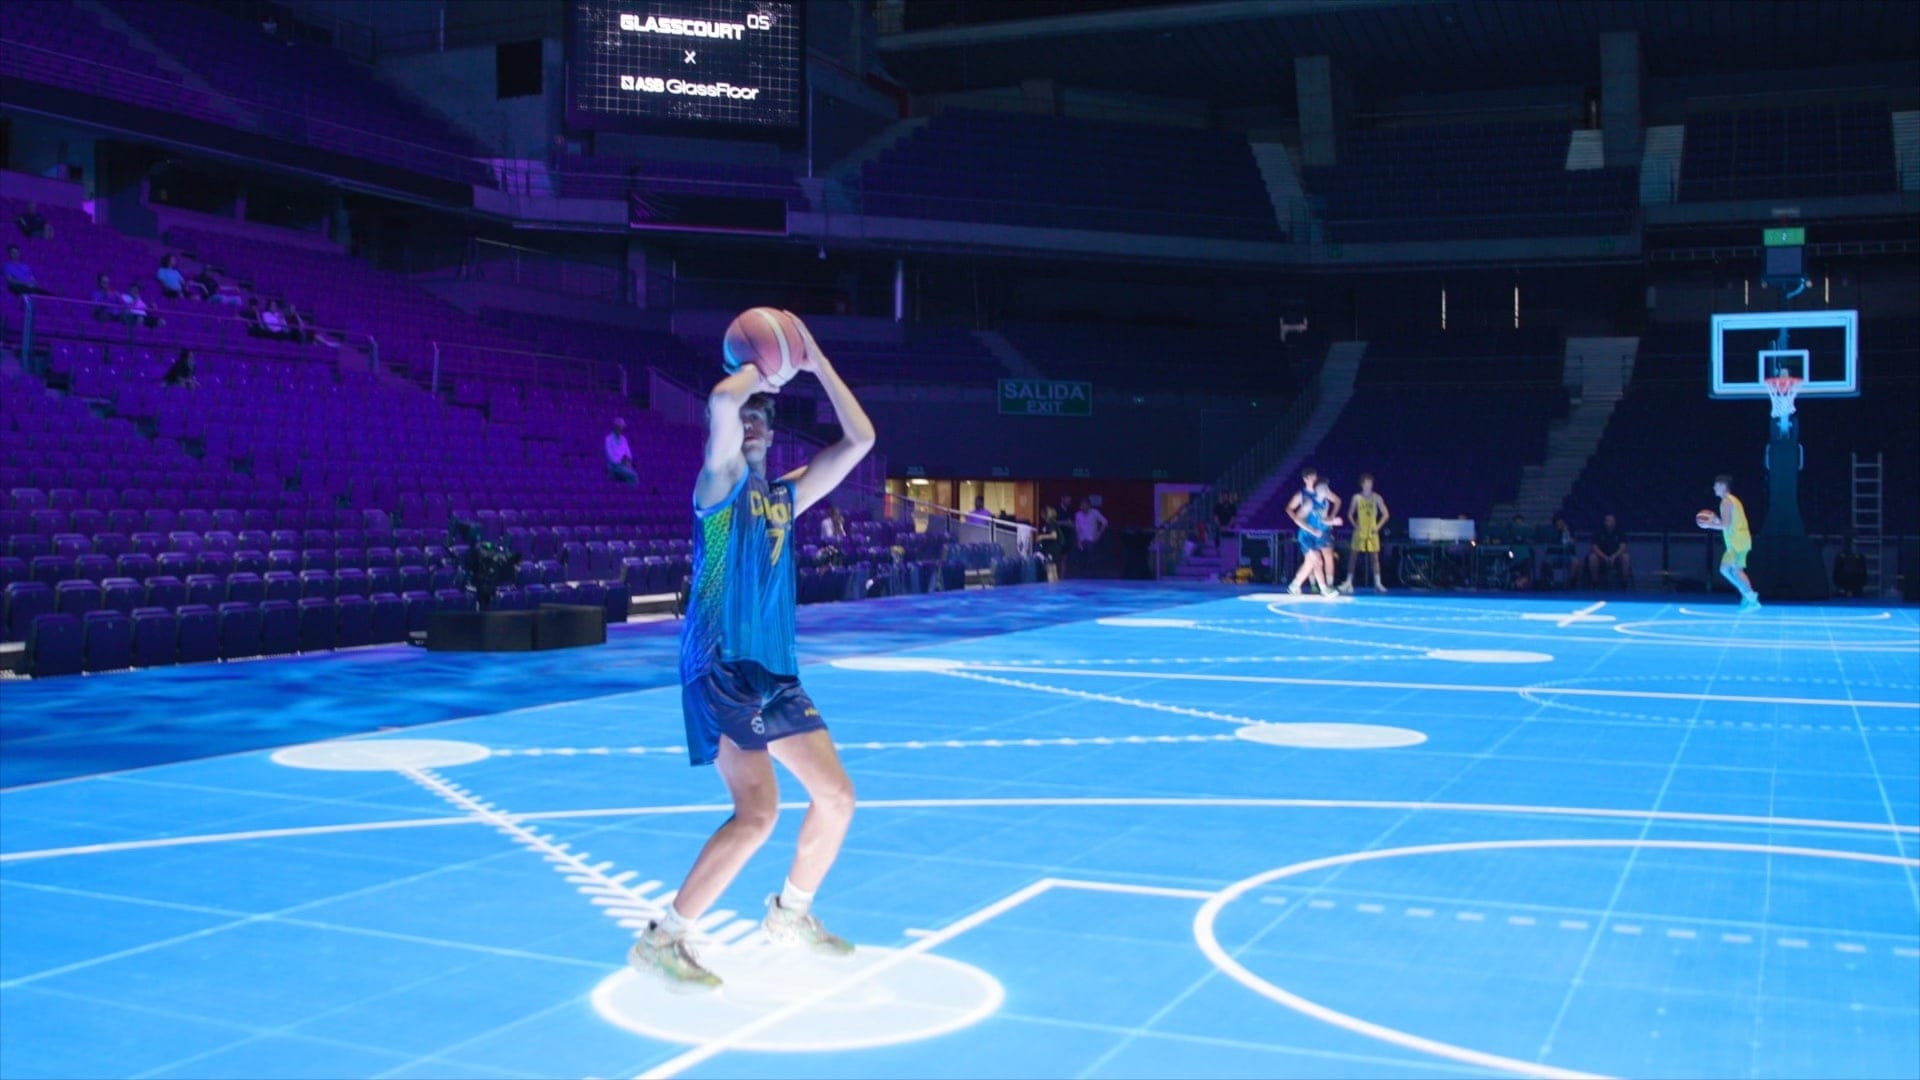 NBA хочет использовать во время игр дисплей GlassFloor размером с баскетбольную площадку